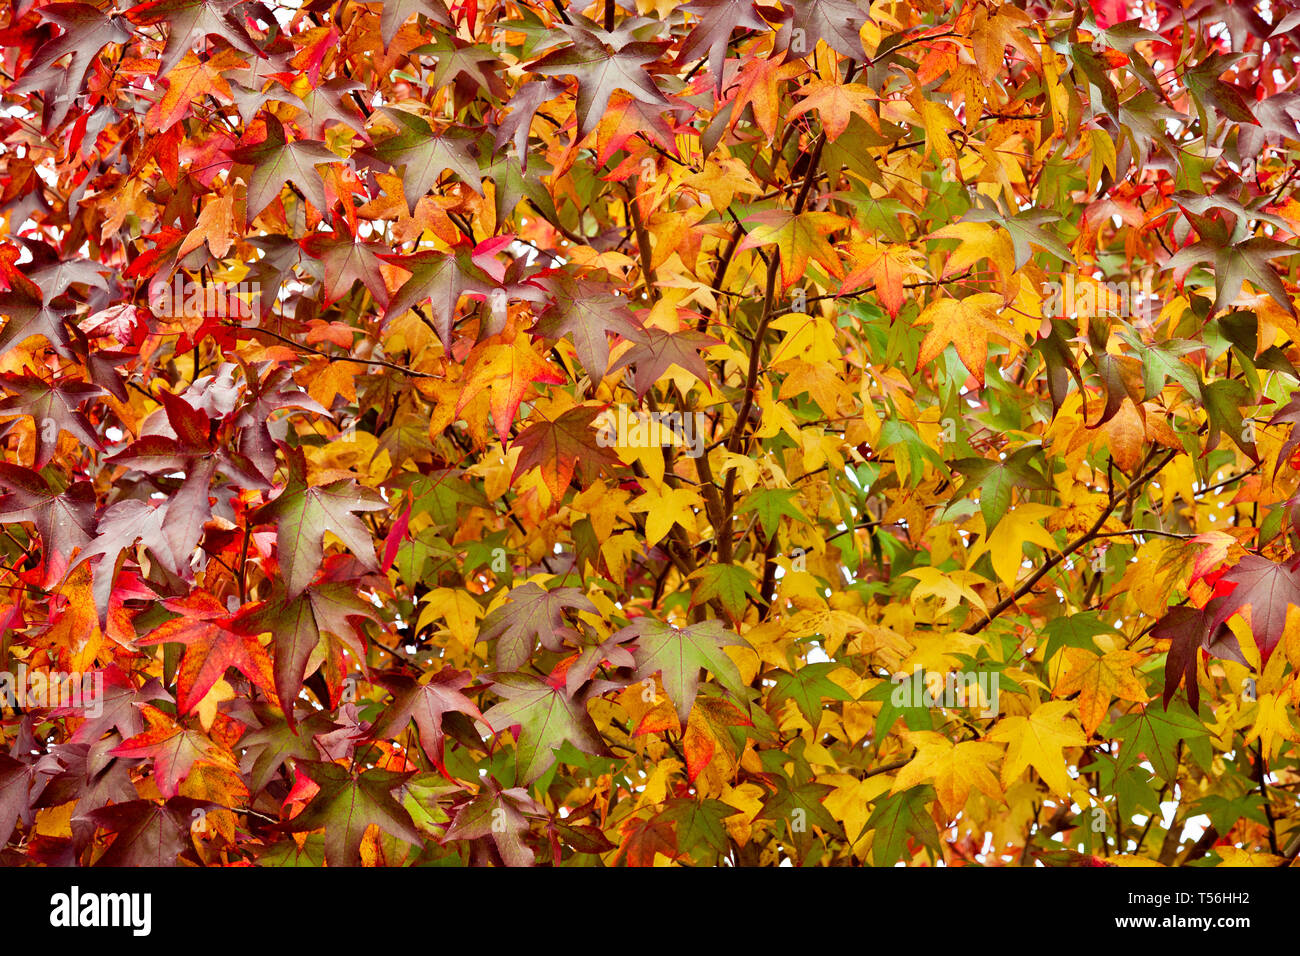 Nature fond avec des feuilles d'automne Banque D'Images